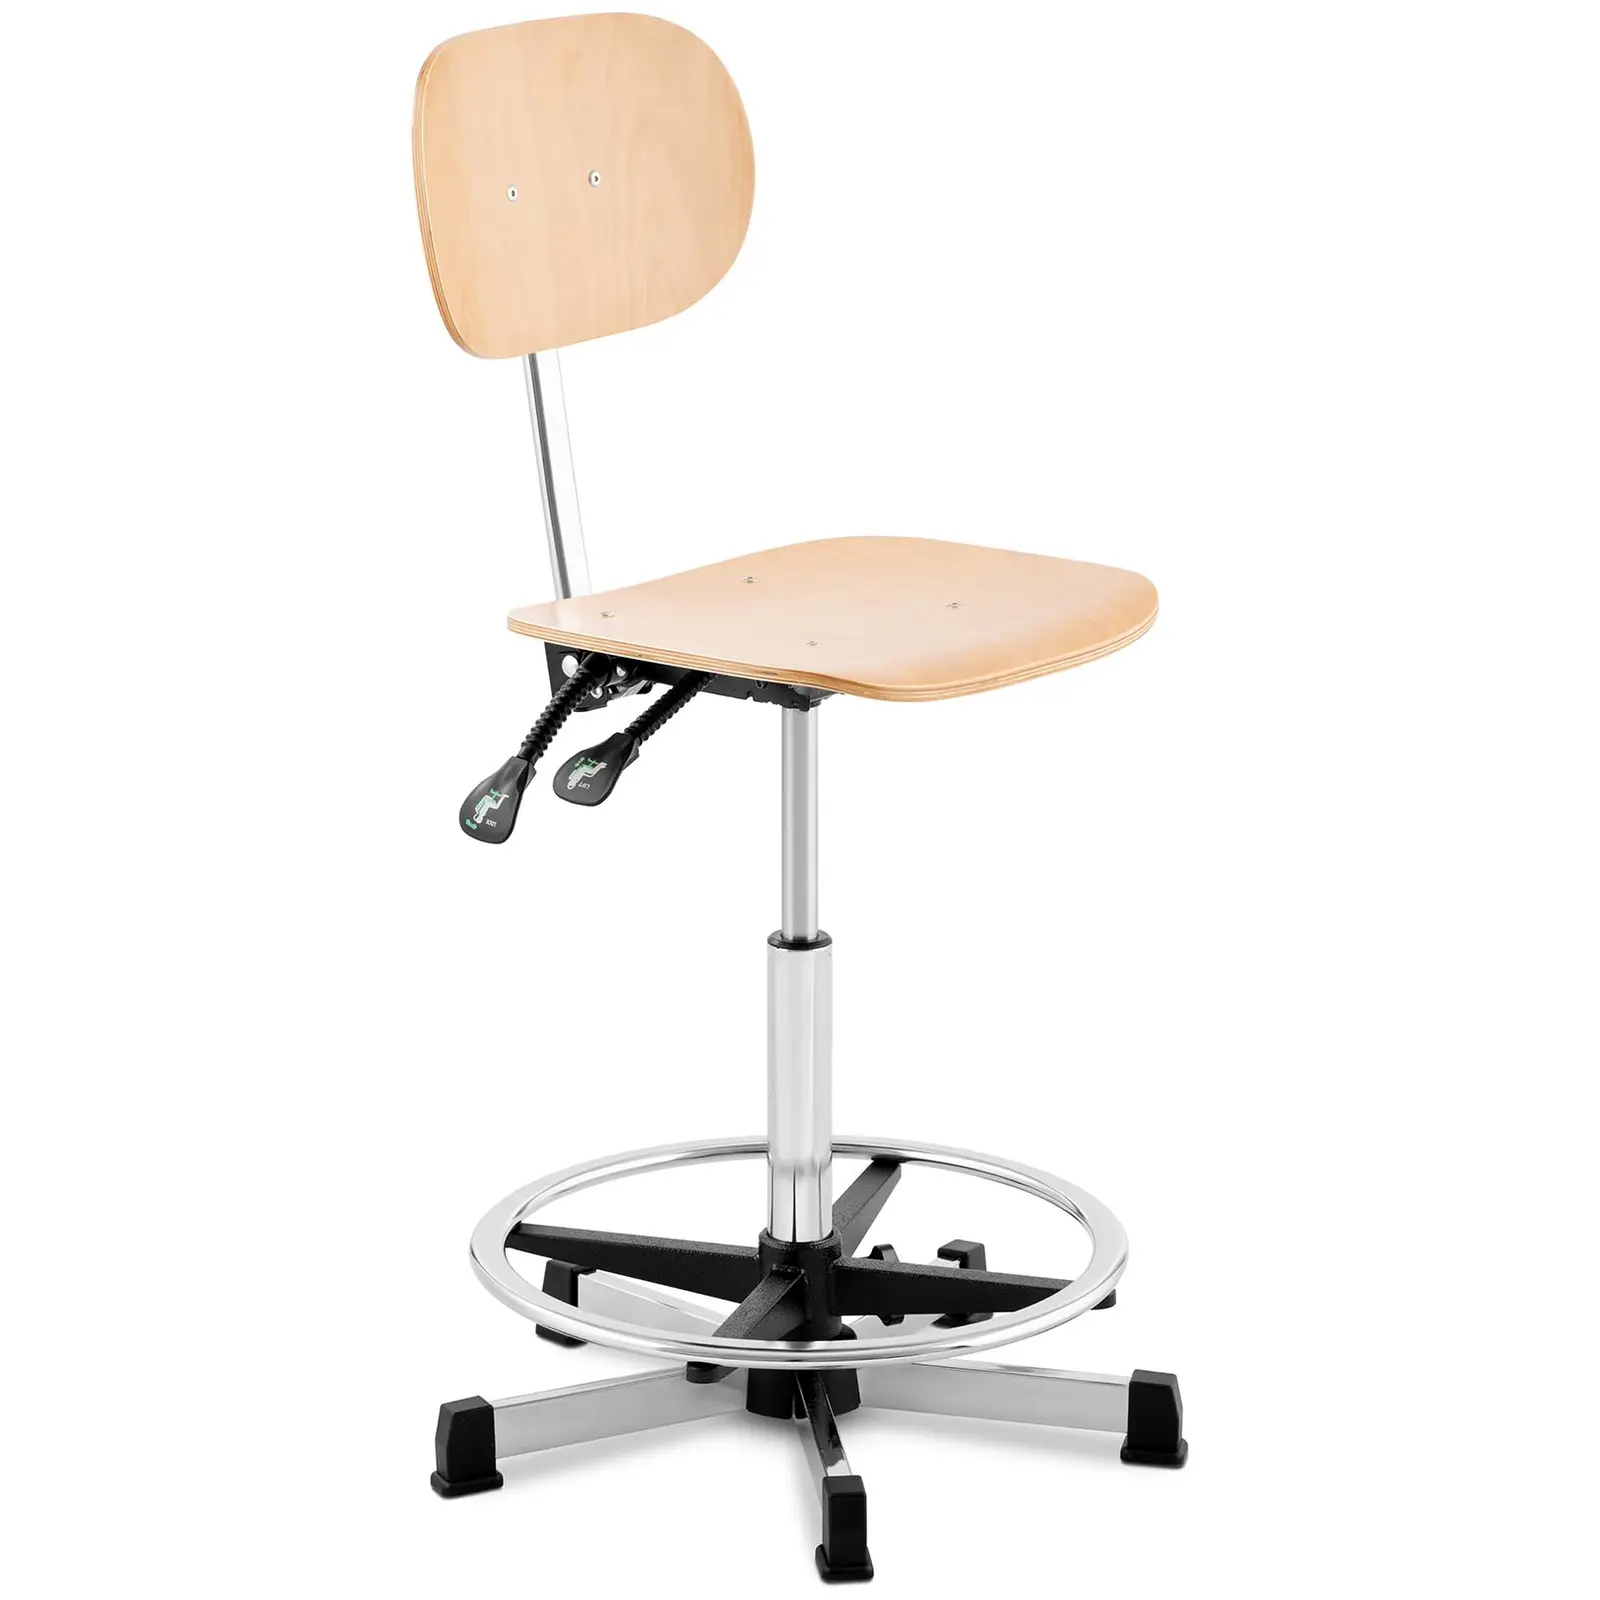 Dirbtuvių kėdė - 120 kg - chromas, medis - žiedo formos kojų atrama - reguliuojamas aukštis 550-800 mm